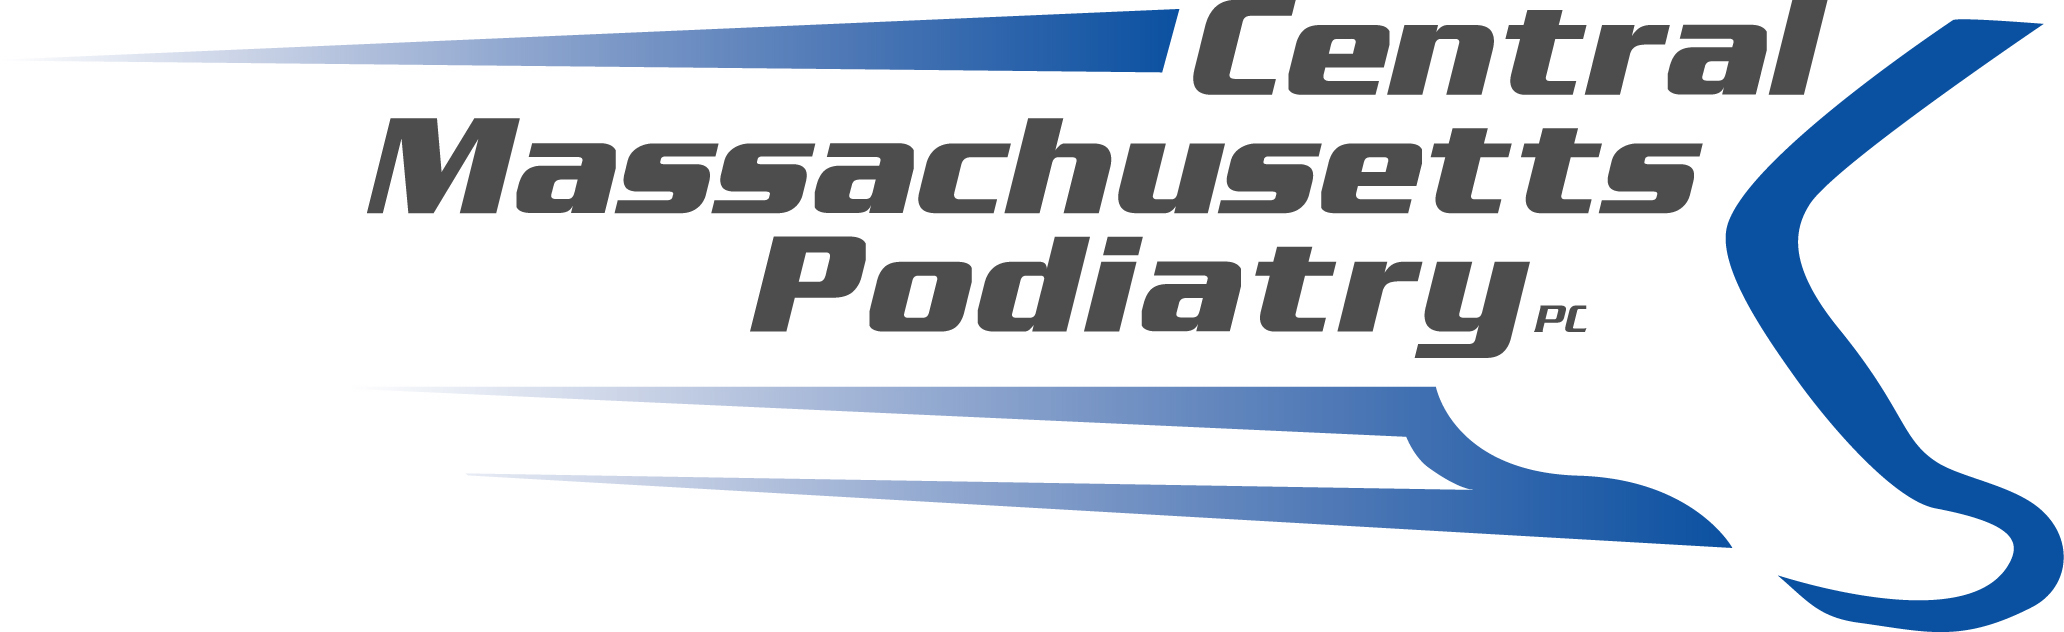 Sponsor Central Massachusetts Podiatry